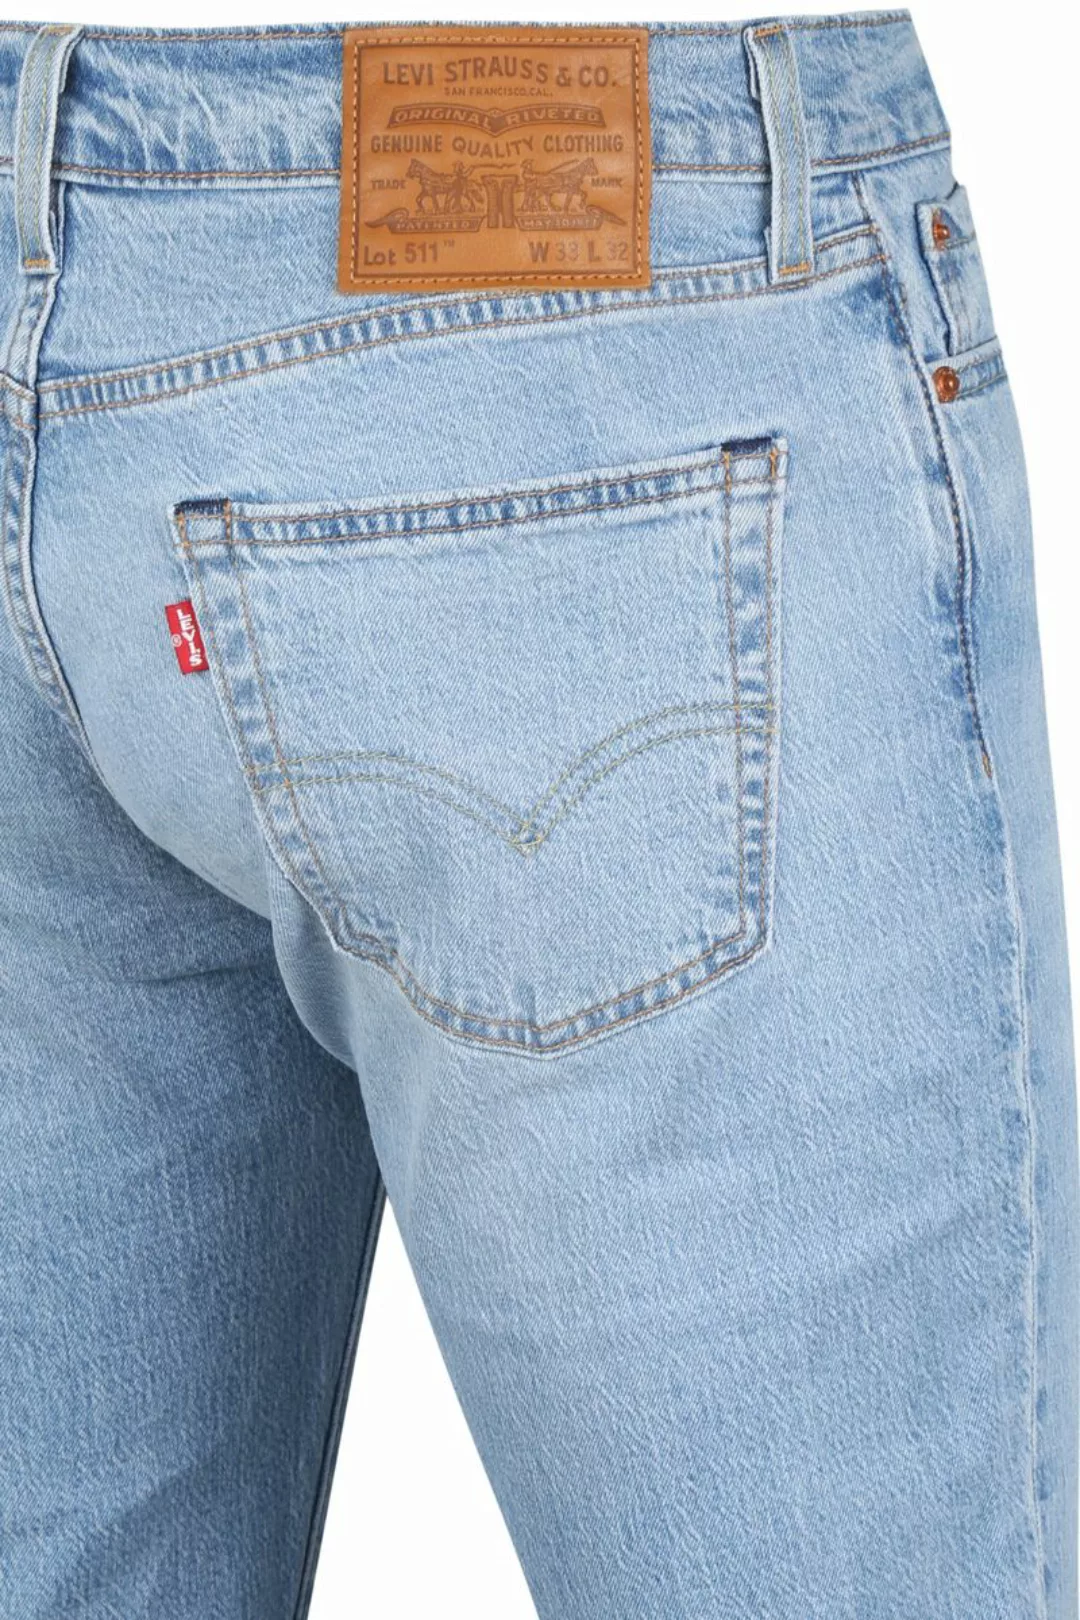 Levi's 511 Jeanshose Blau - Größe W 33 - L 34 günstig online kaufen